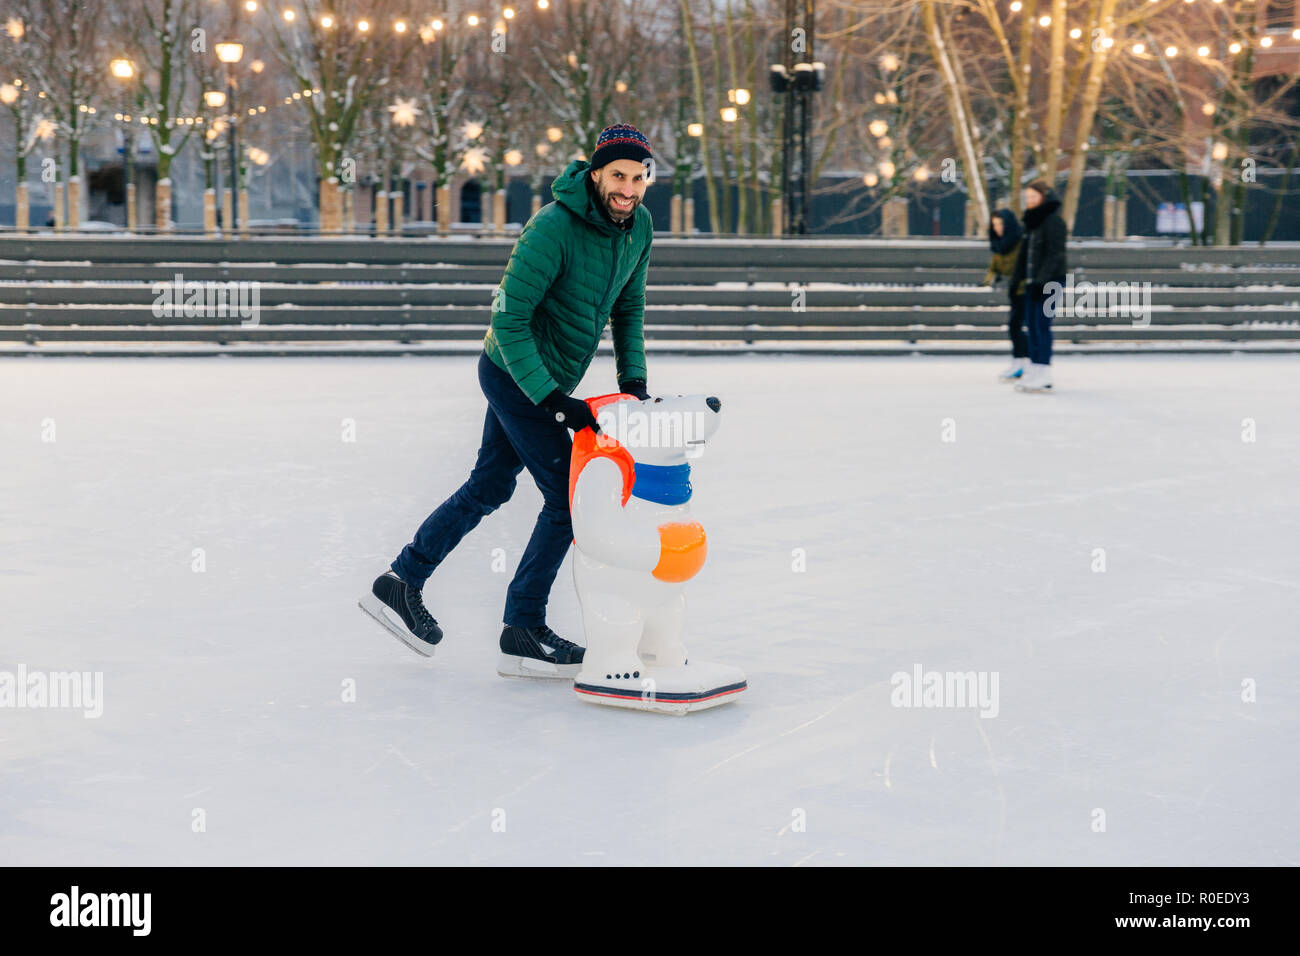 Positivo attraente sorridente uomo in caldo abbigliamento invernale e  pattini, prassi andare il pattinaggio su ghiaccio, utilizza il pattino  rink, guarda deliziosamente nella fotocamera, trascorrere Foto stock - Alamy